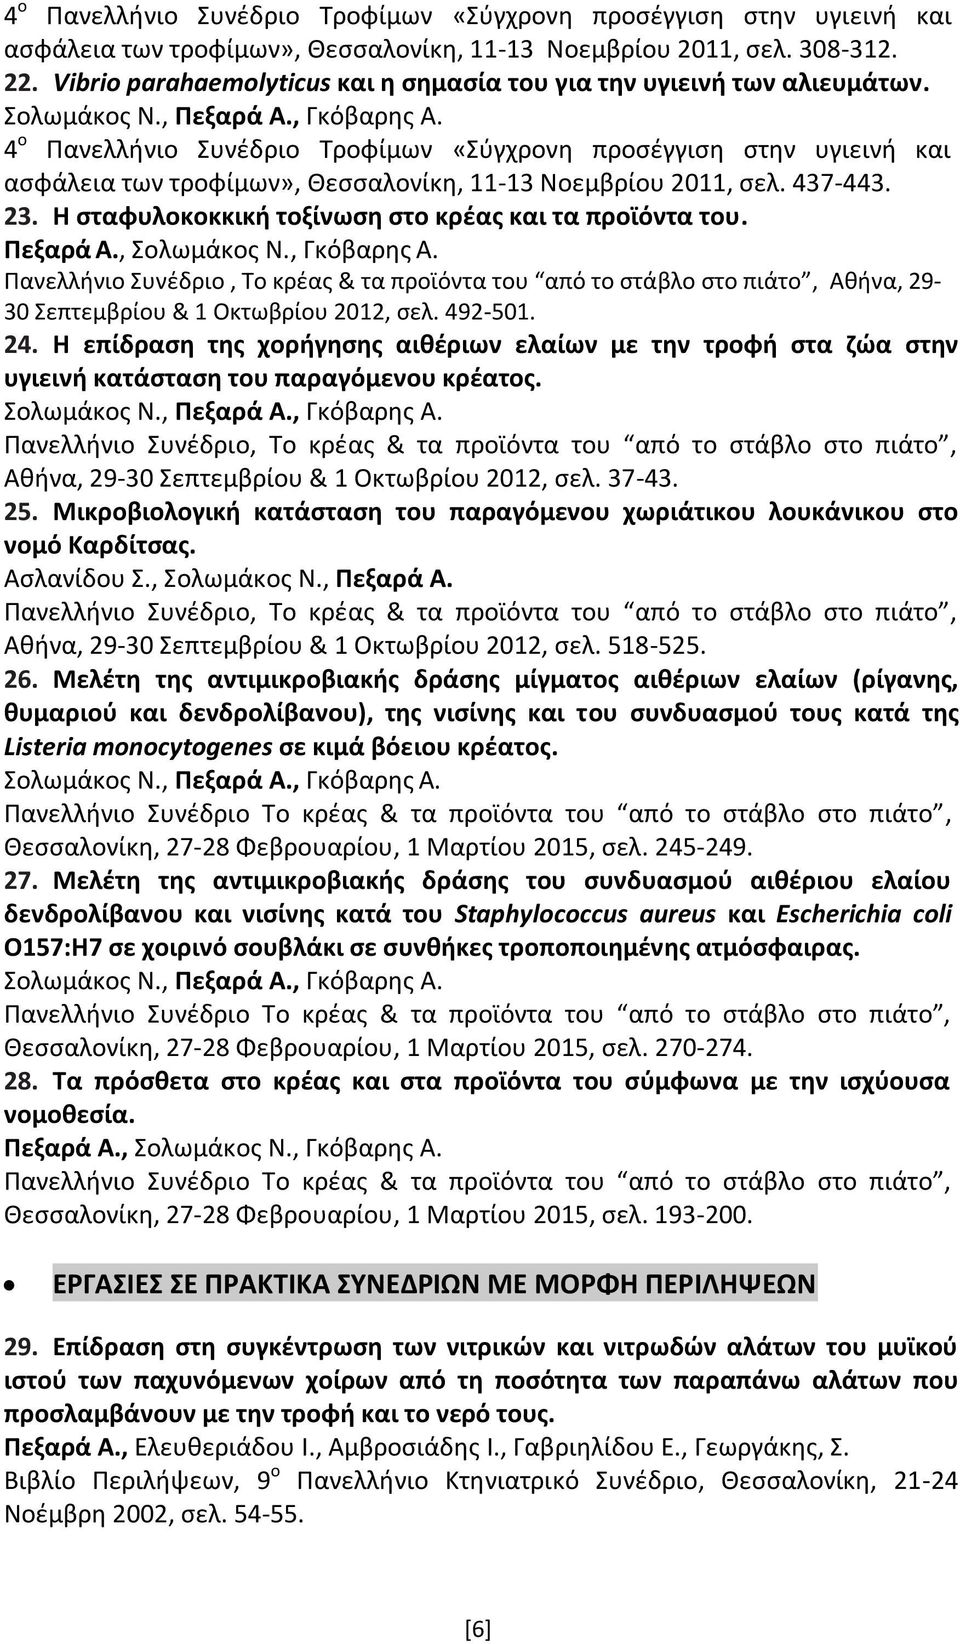 4 ο Πανελλήνιο Συνέδριο Τροφίμων «Σύγχρονη προσέγγιση στην υγιεινή και ασφάλεια των τροφίμων», Θεσσαλονίκη, 11-13 Νοεμβρίου 2011, σελ. 437-443. 23.